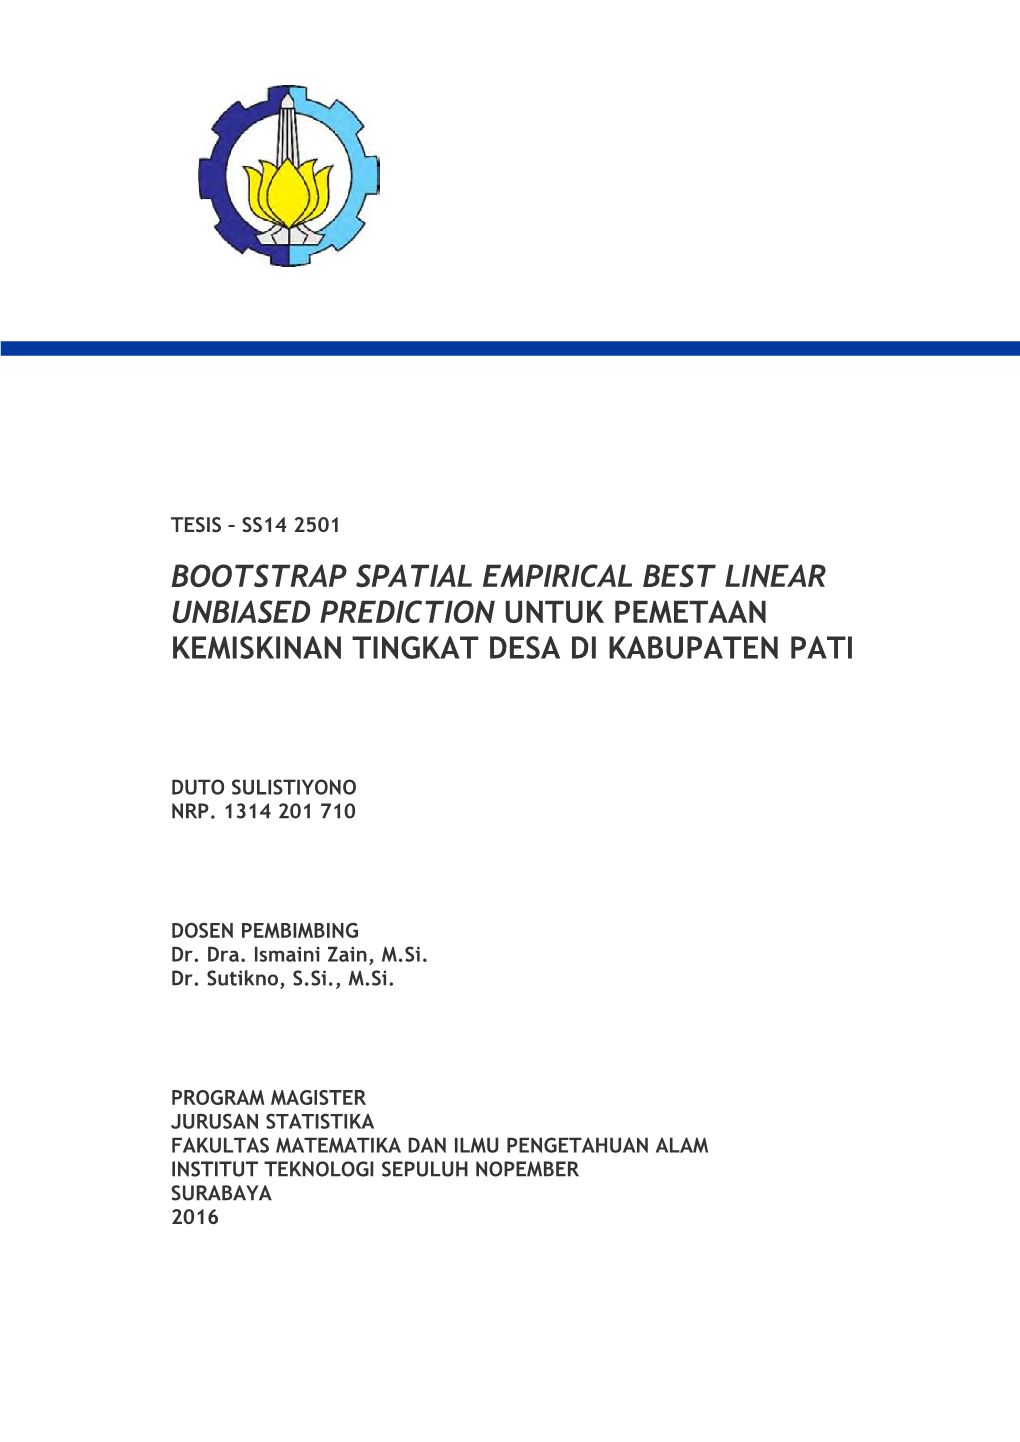 Bootstrap Spatial Empirical Best Linear Unbiased Prediction Untuk Pemetaan Kemiskinan Tingkat Desa Di Kabupaten Pati